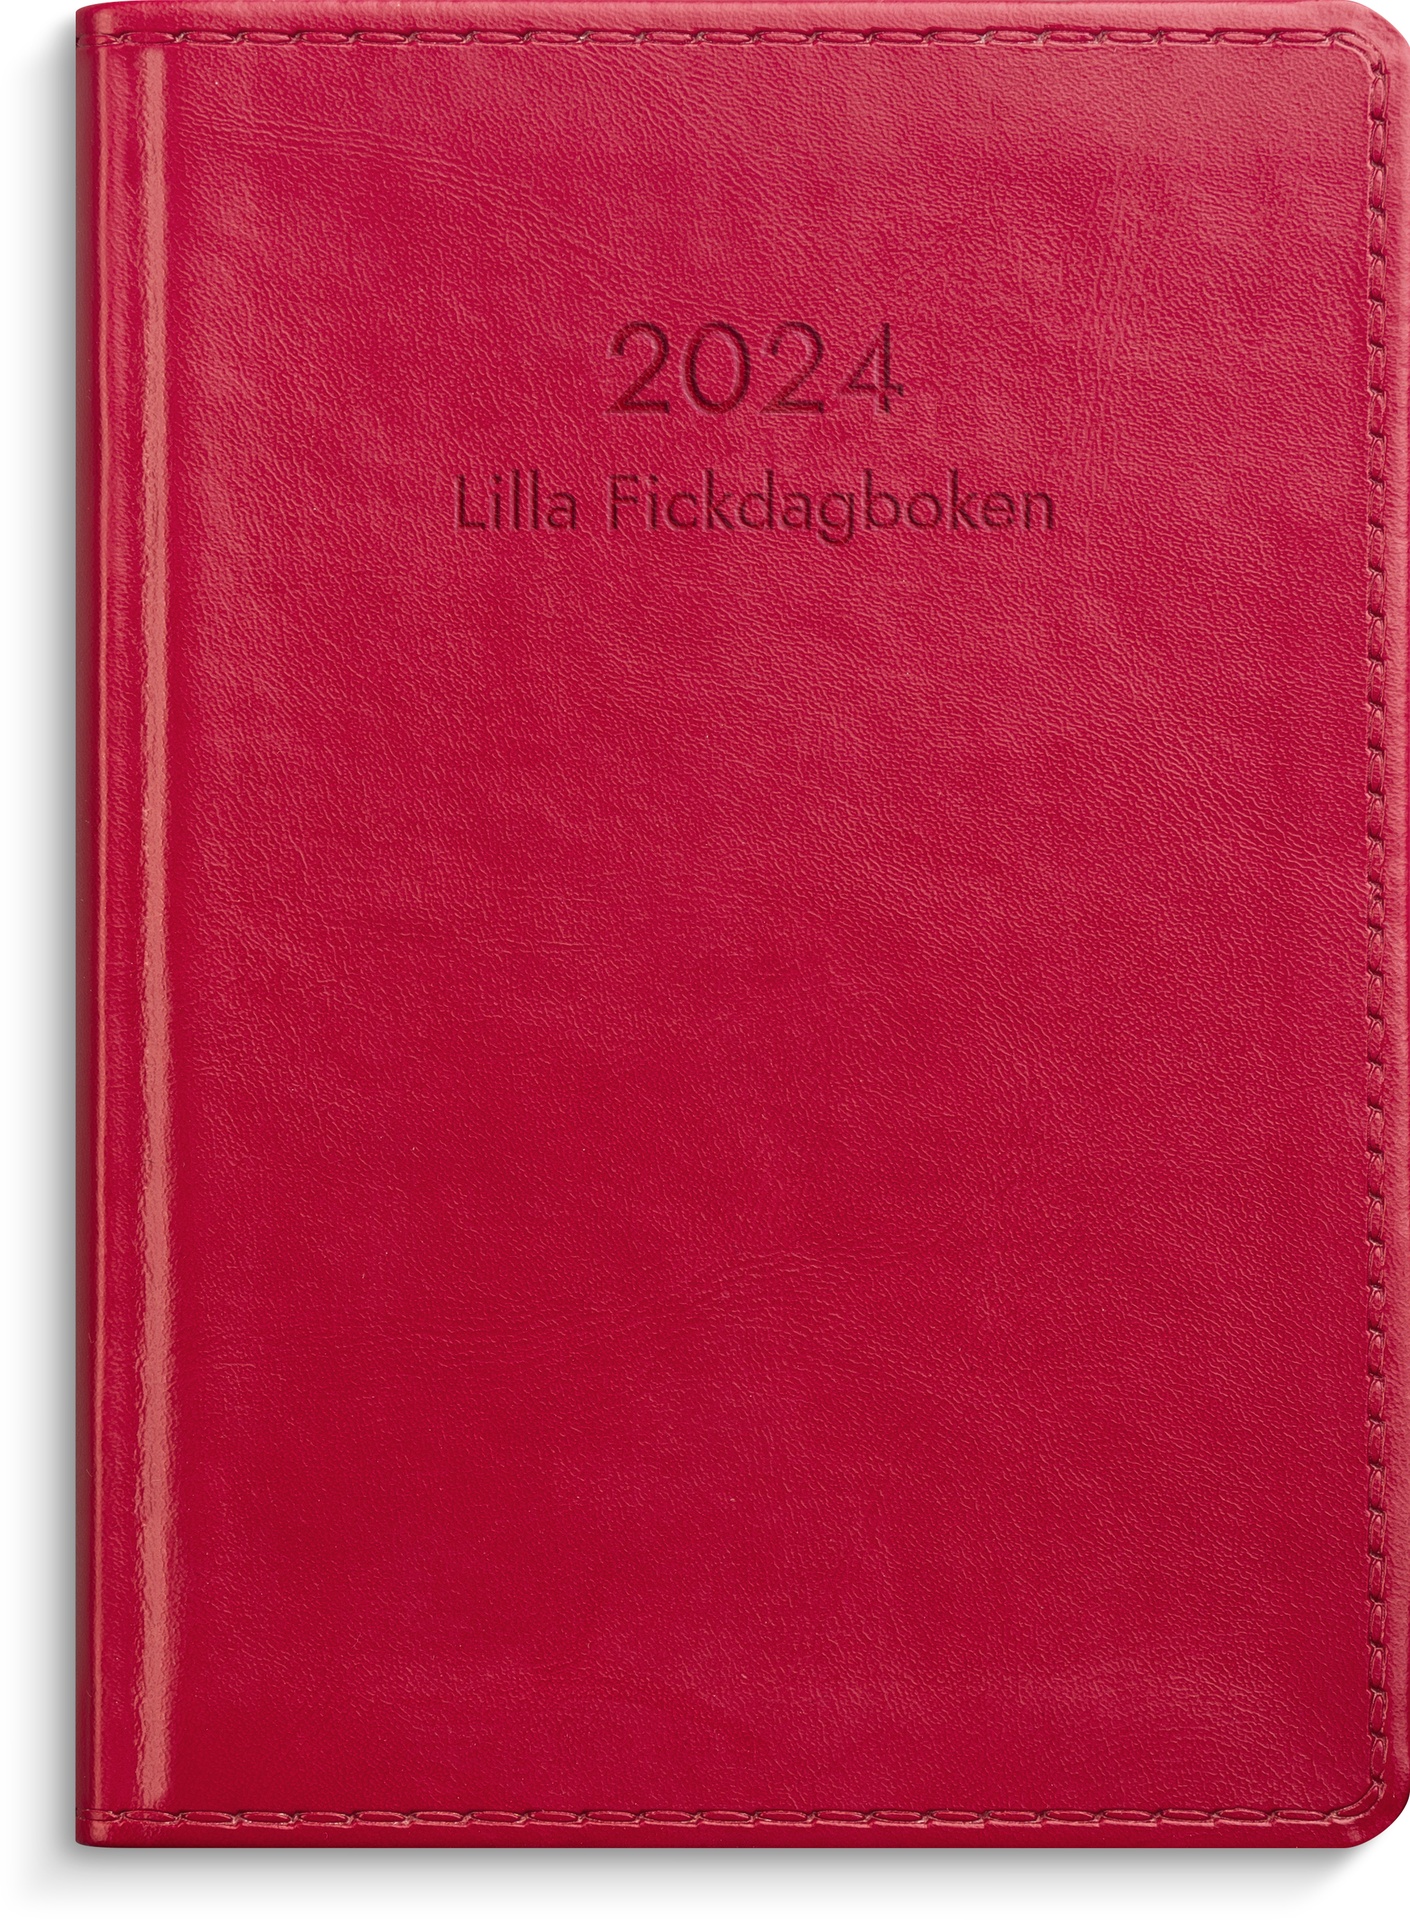 [61325724] Lilla Fickdagboken röd 2024